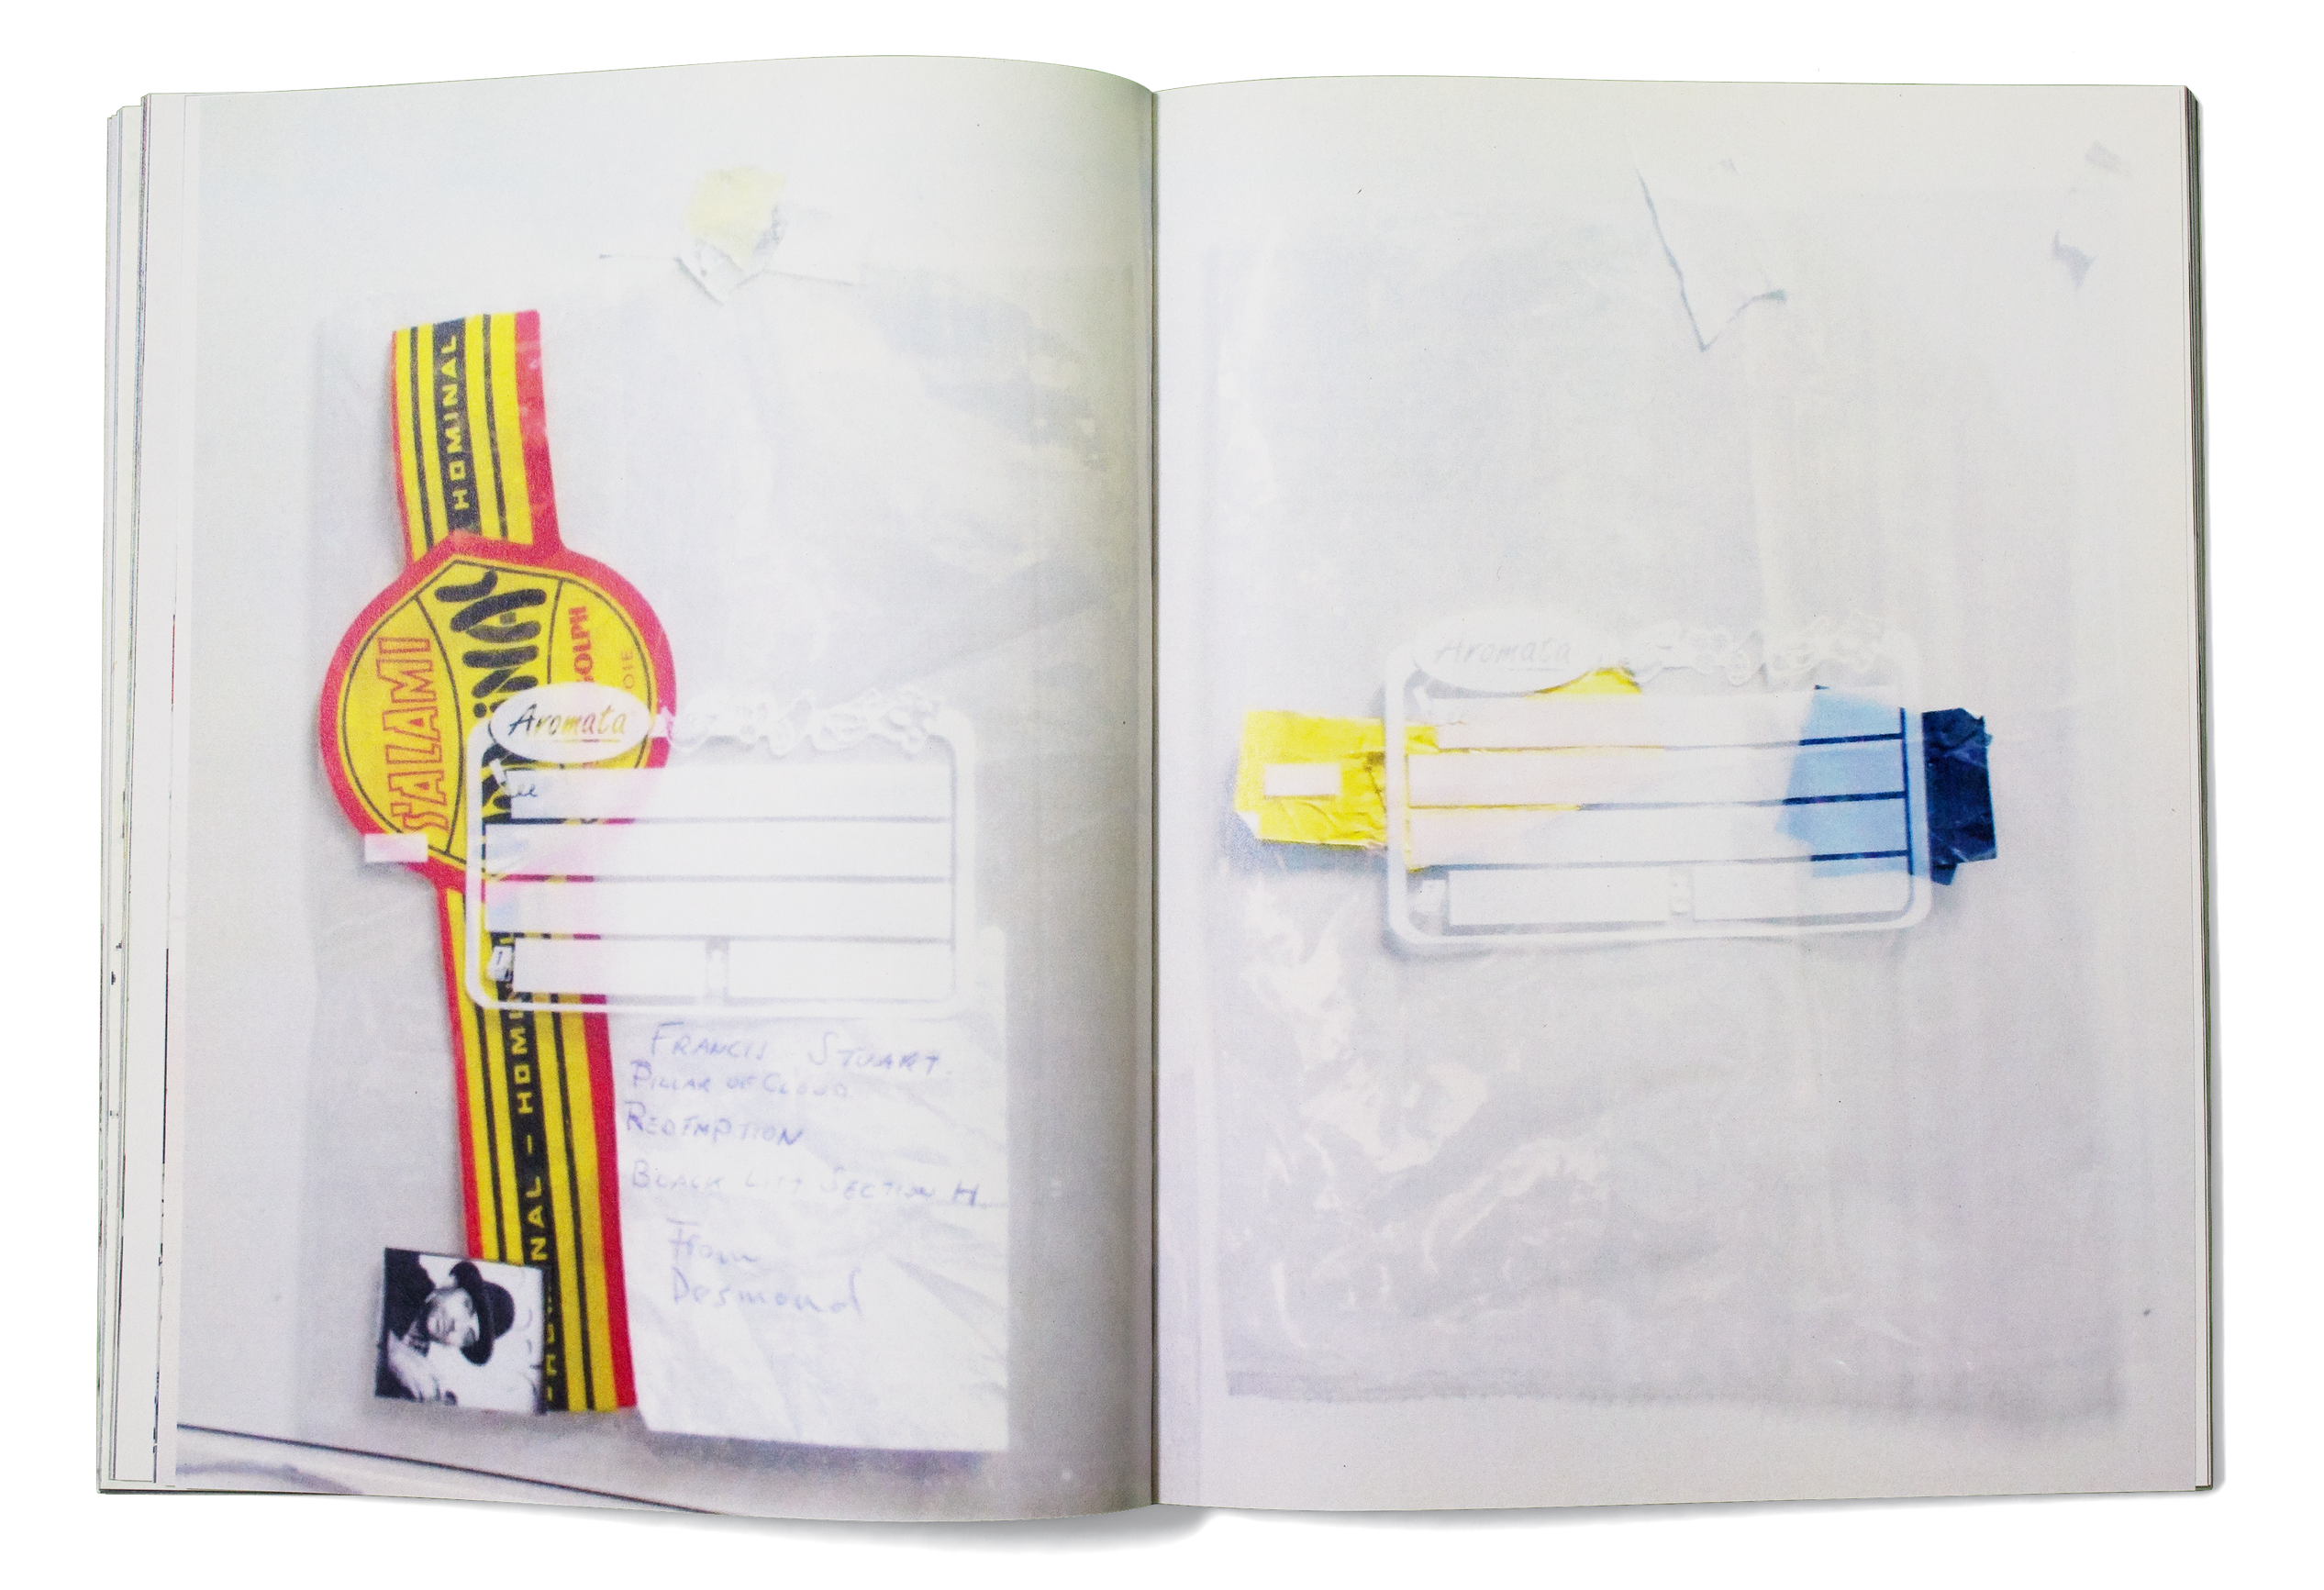 Double page du livre d'artiste «Through the Windows» de David Hominal, publié par le Centre d’édition contemporaine, Genève